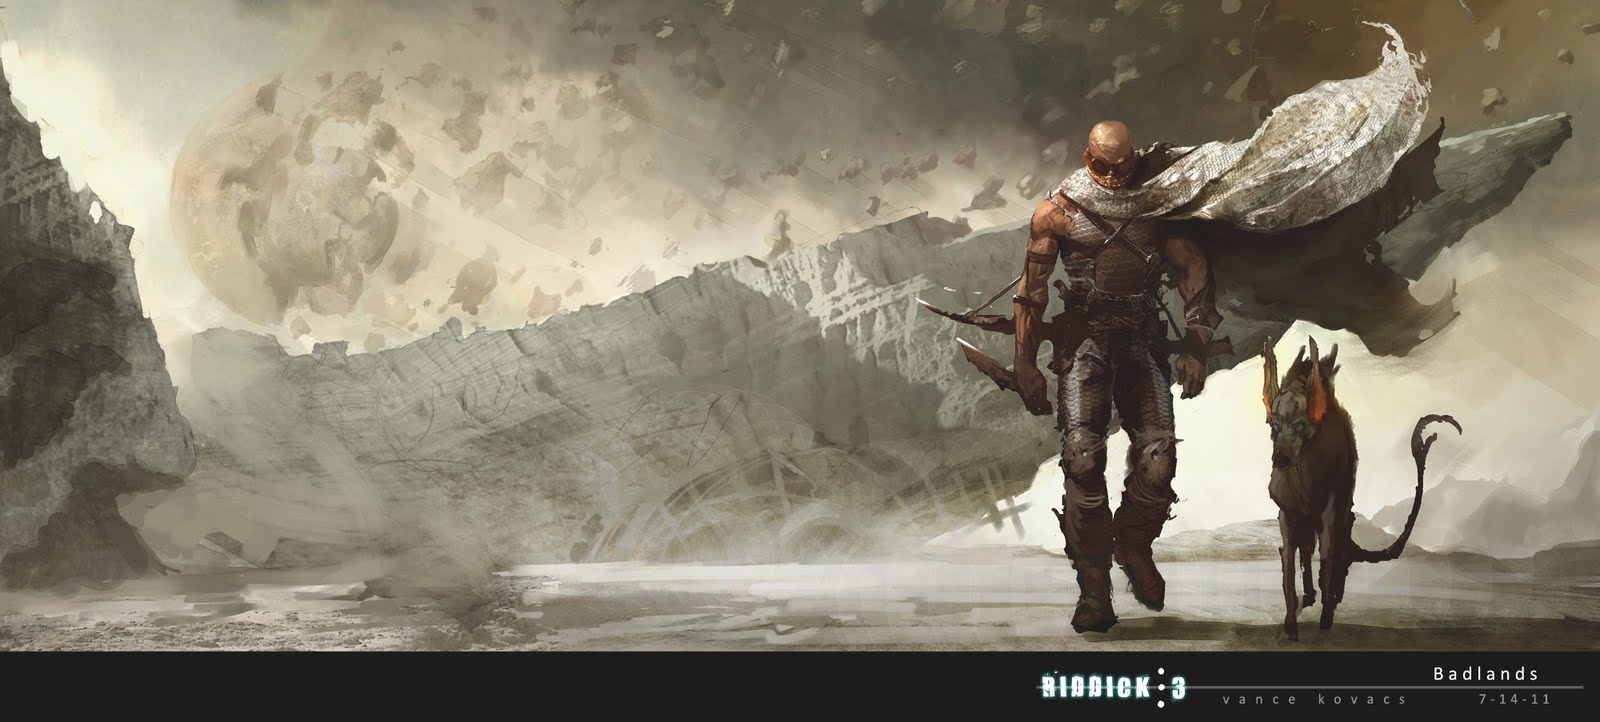 Dsng S Sci Fi Megaverse First Details On Vin Diesel S Riddick 3